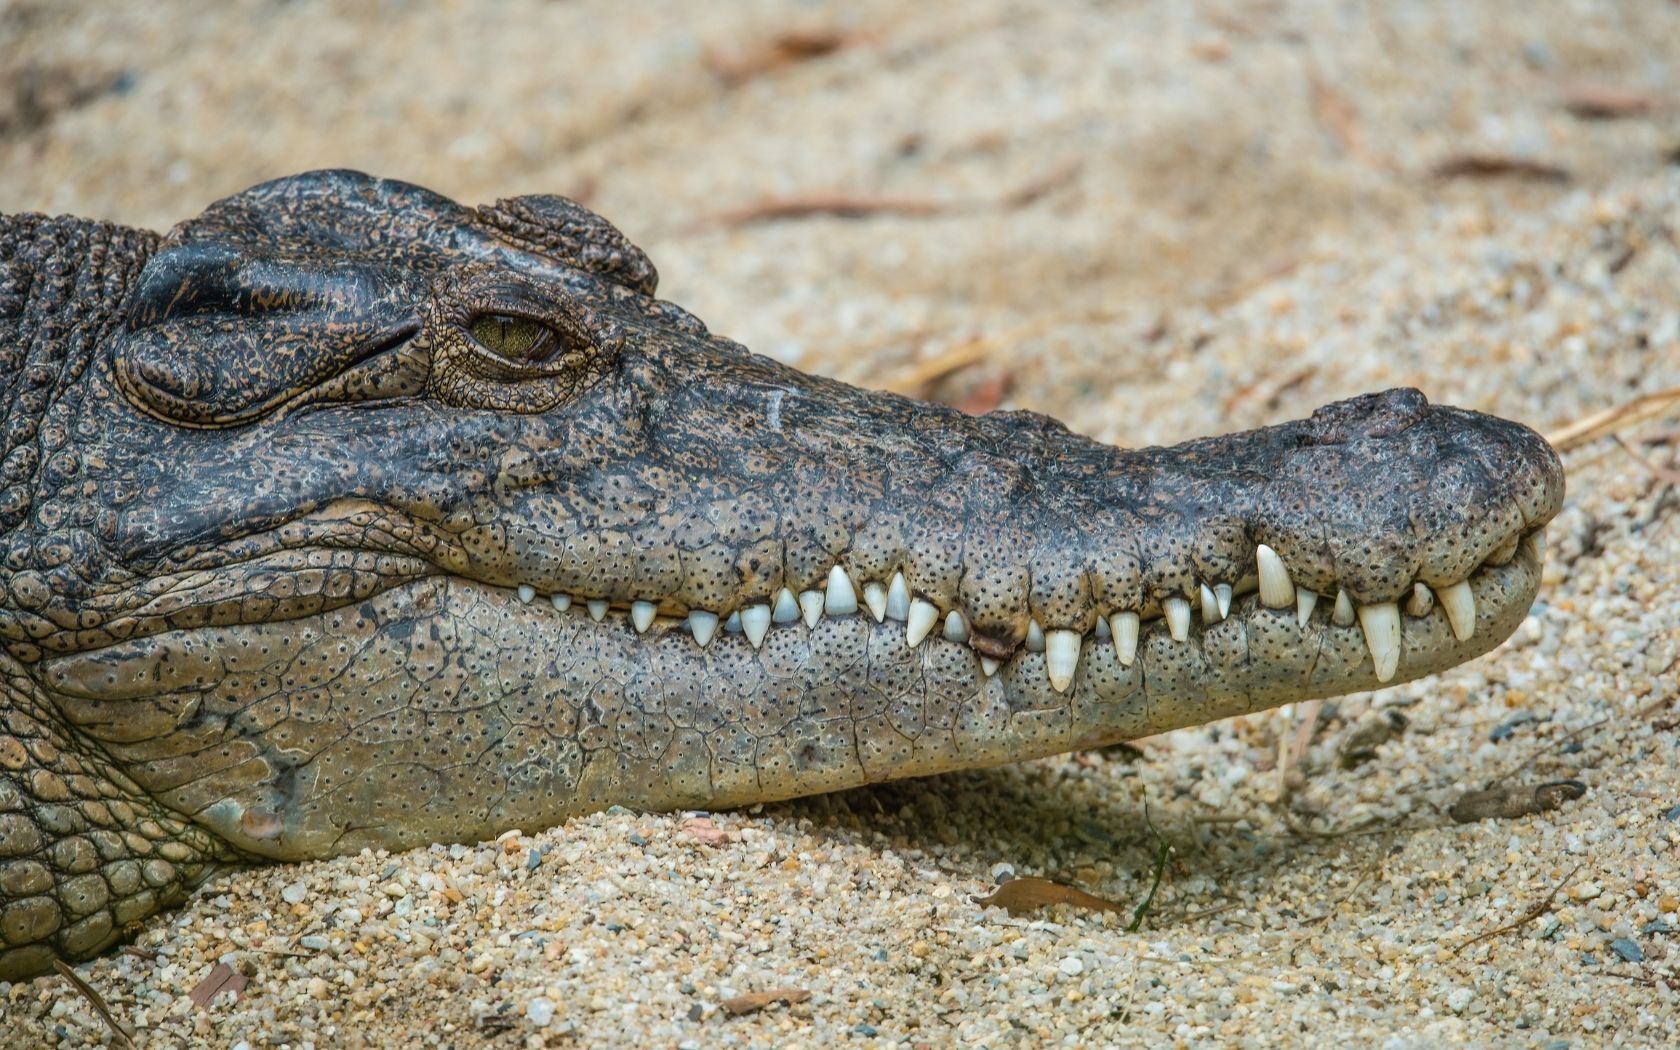 An Australian Estuarine crocodile relaxes on the bank of a lake.